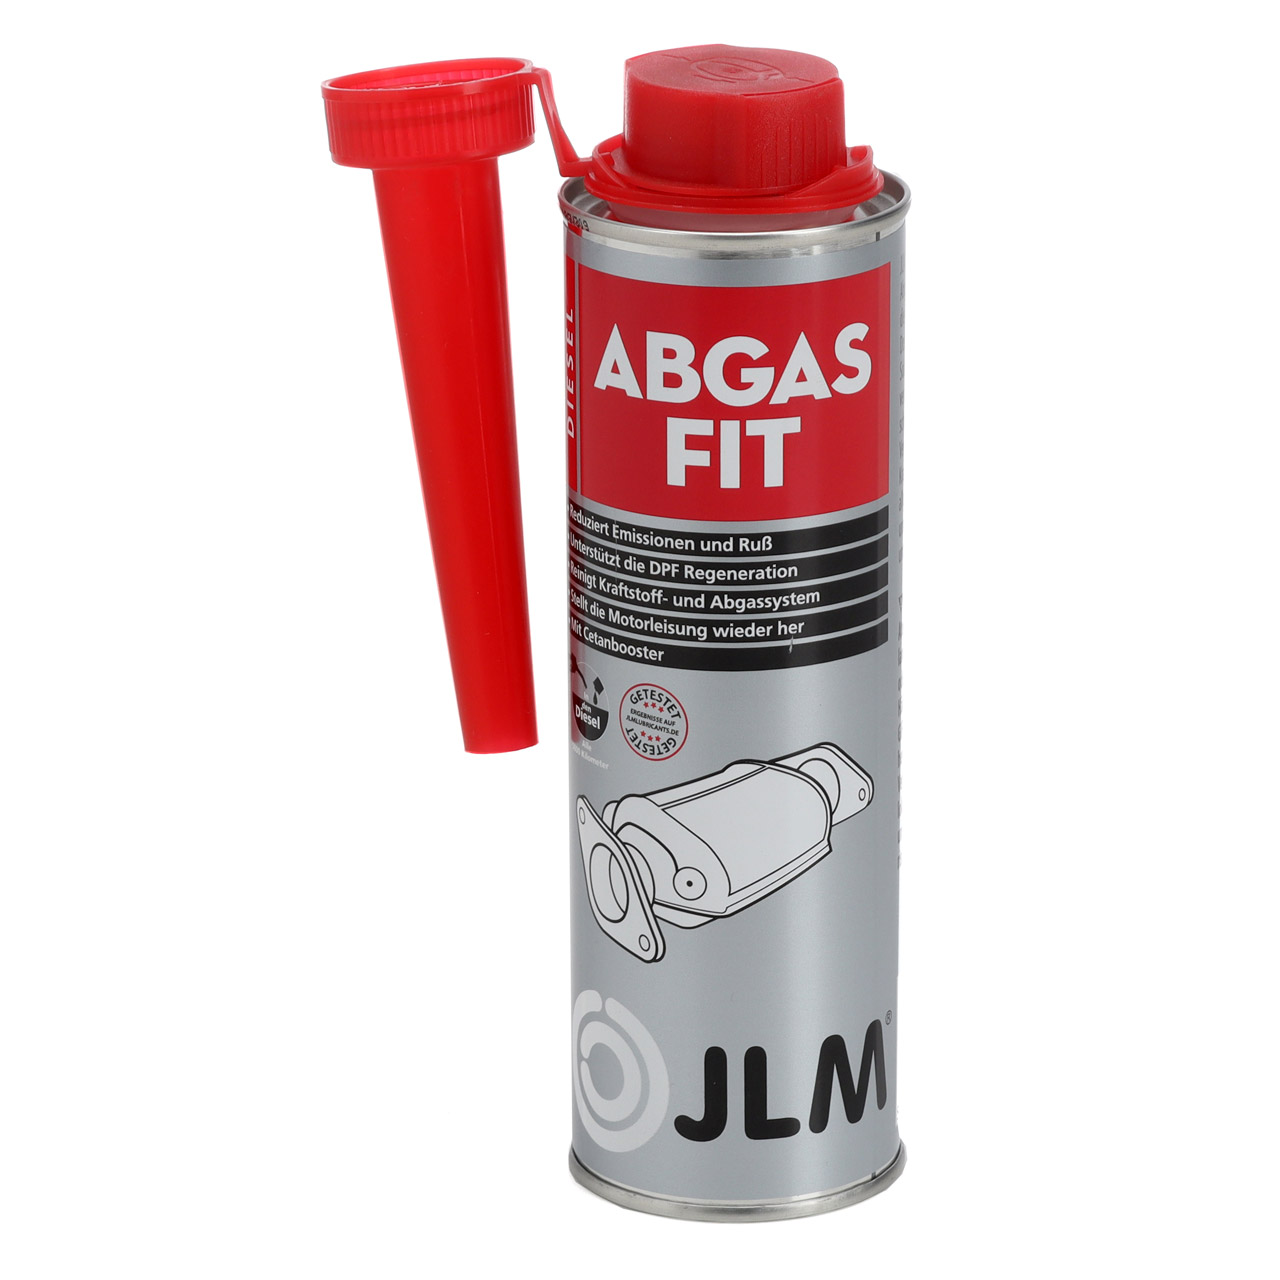 JLM J02372 Abgas Fit Katalysator Reiniger Diesel Cleaner Additiv Zusatz 250 ml